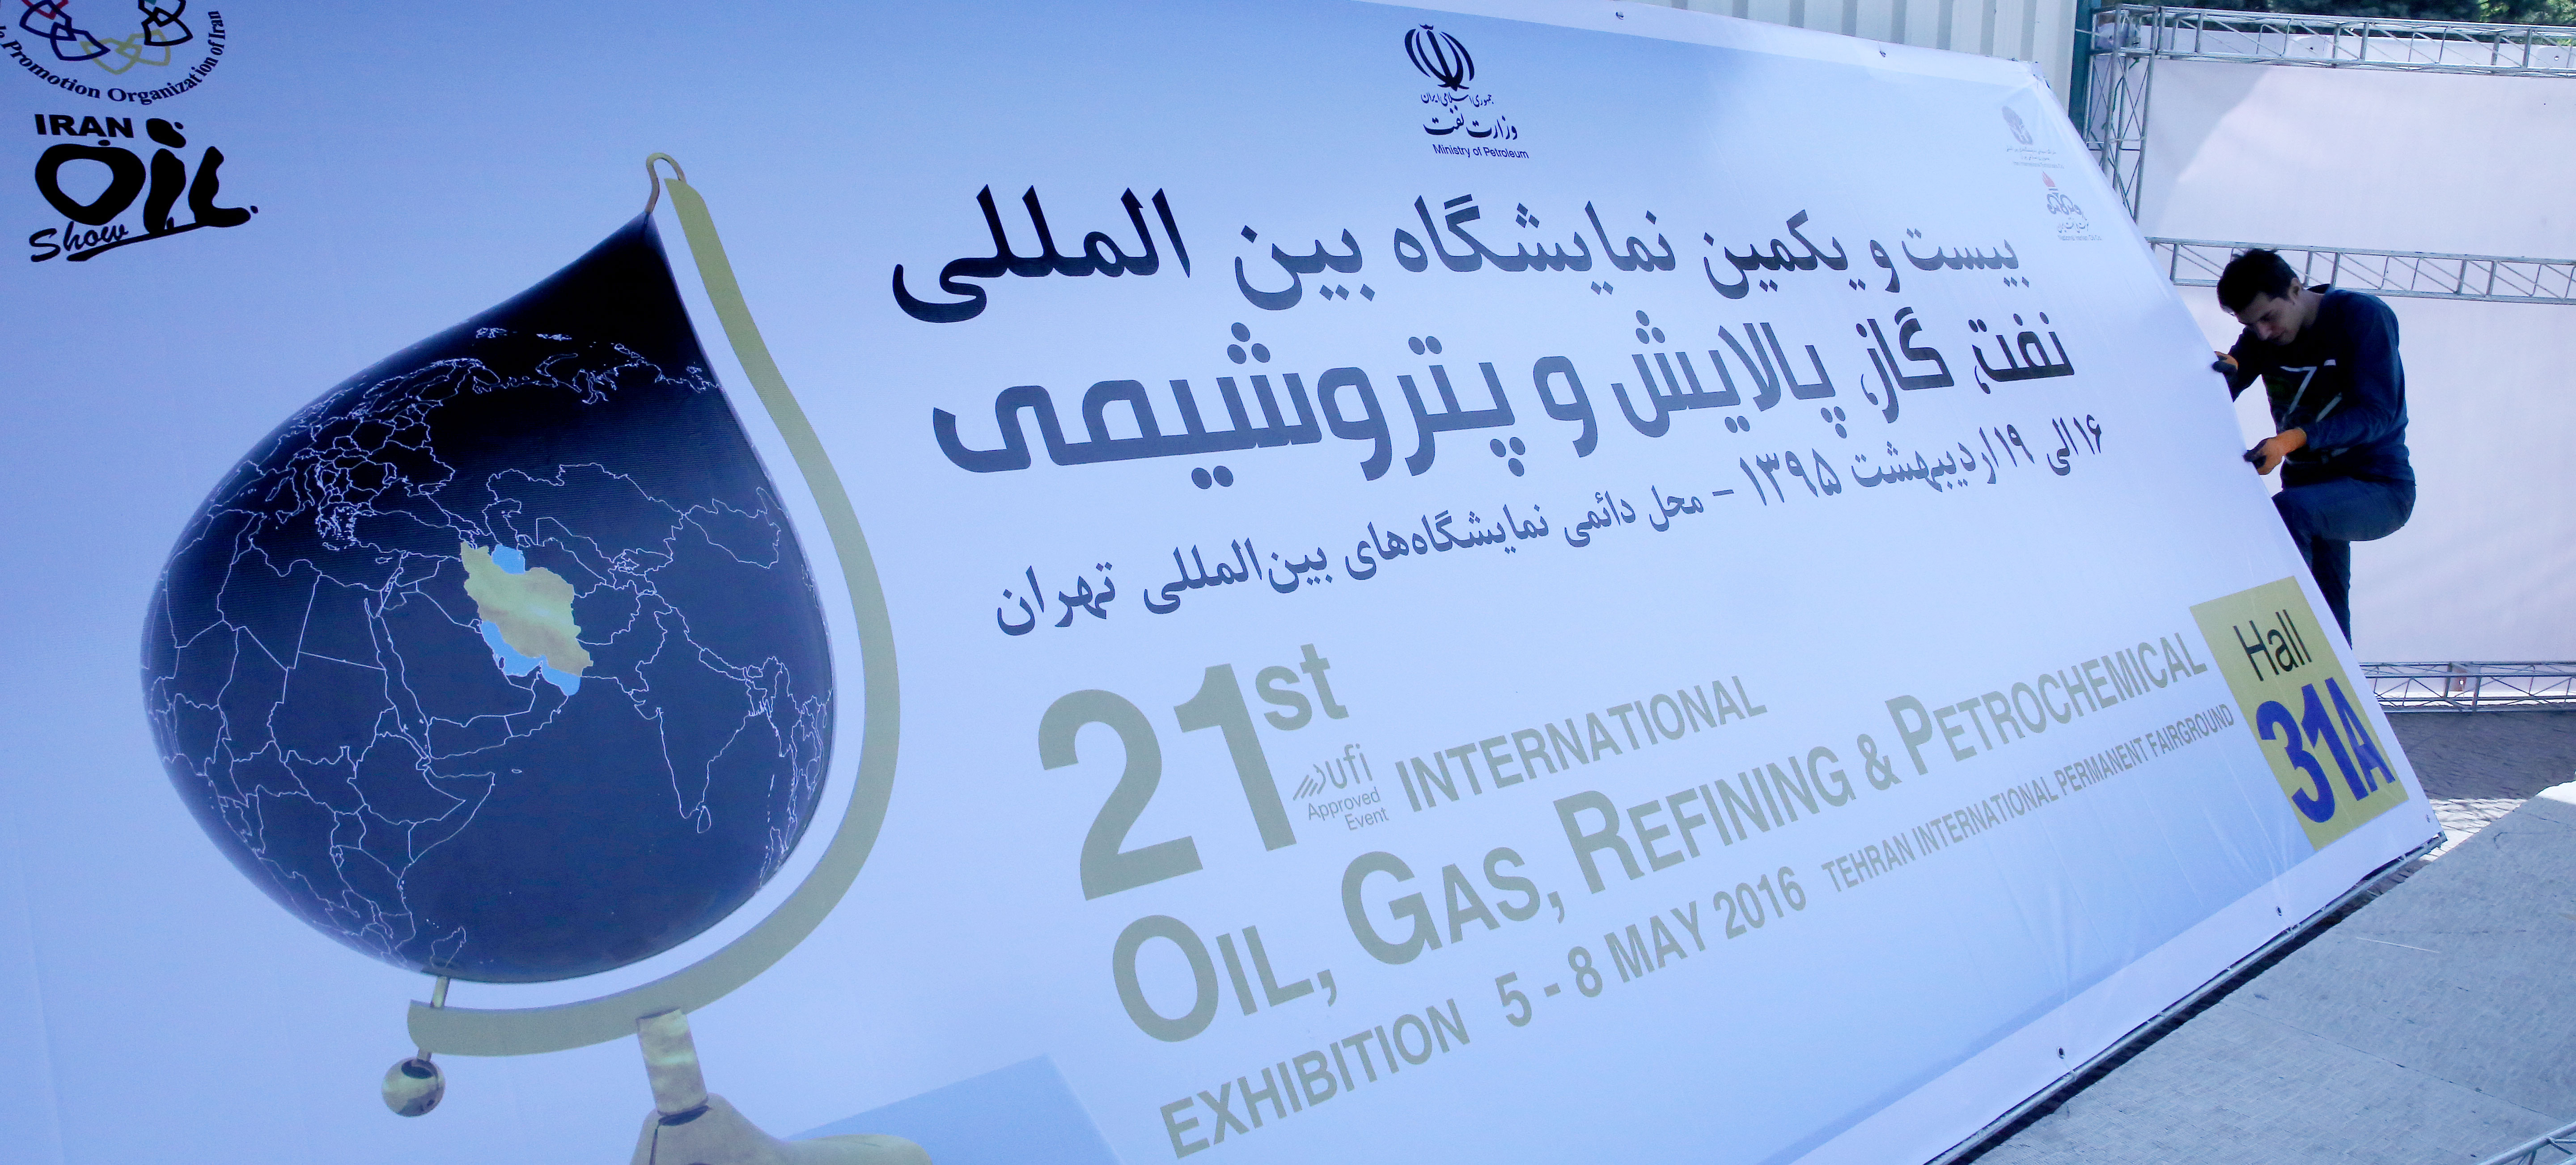 بسیج نیروها برای برگزاری نمایشگاه بیست و یکم صنعت نفت